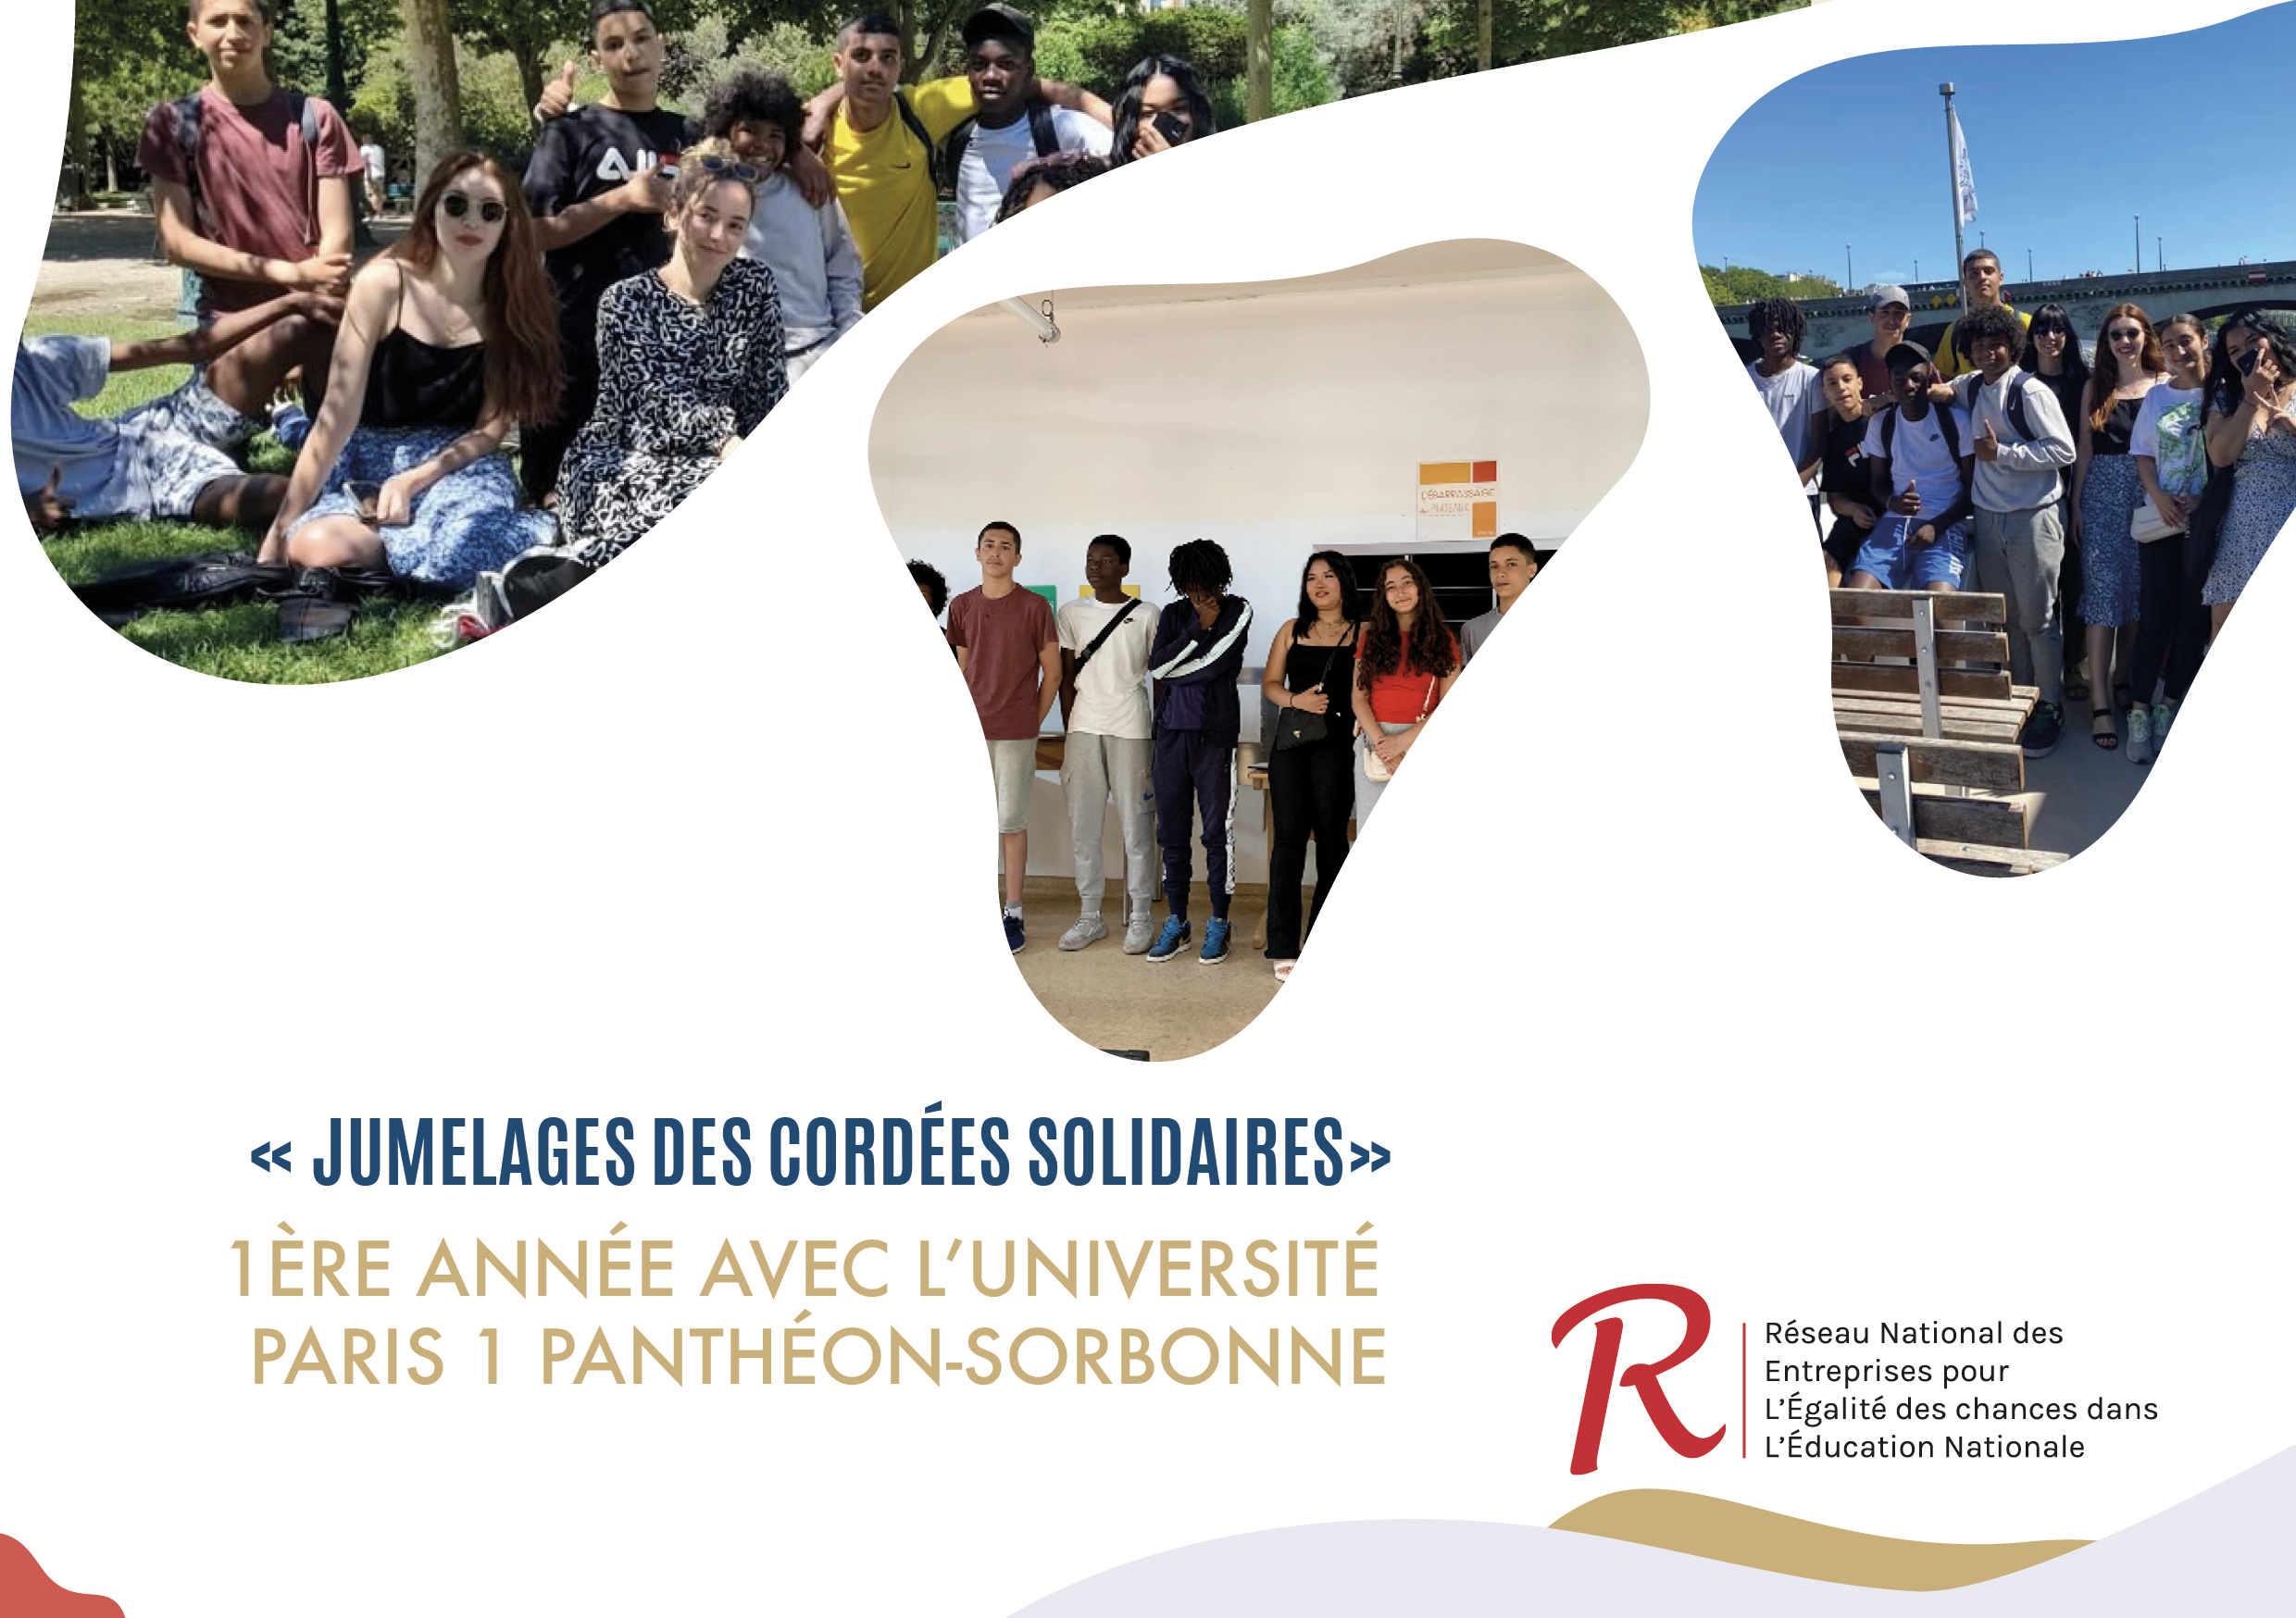 1ère année des « Jumelages des cordées solidaires » de l’université Paris 1 Panthéon-Sorbonne